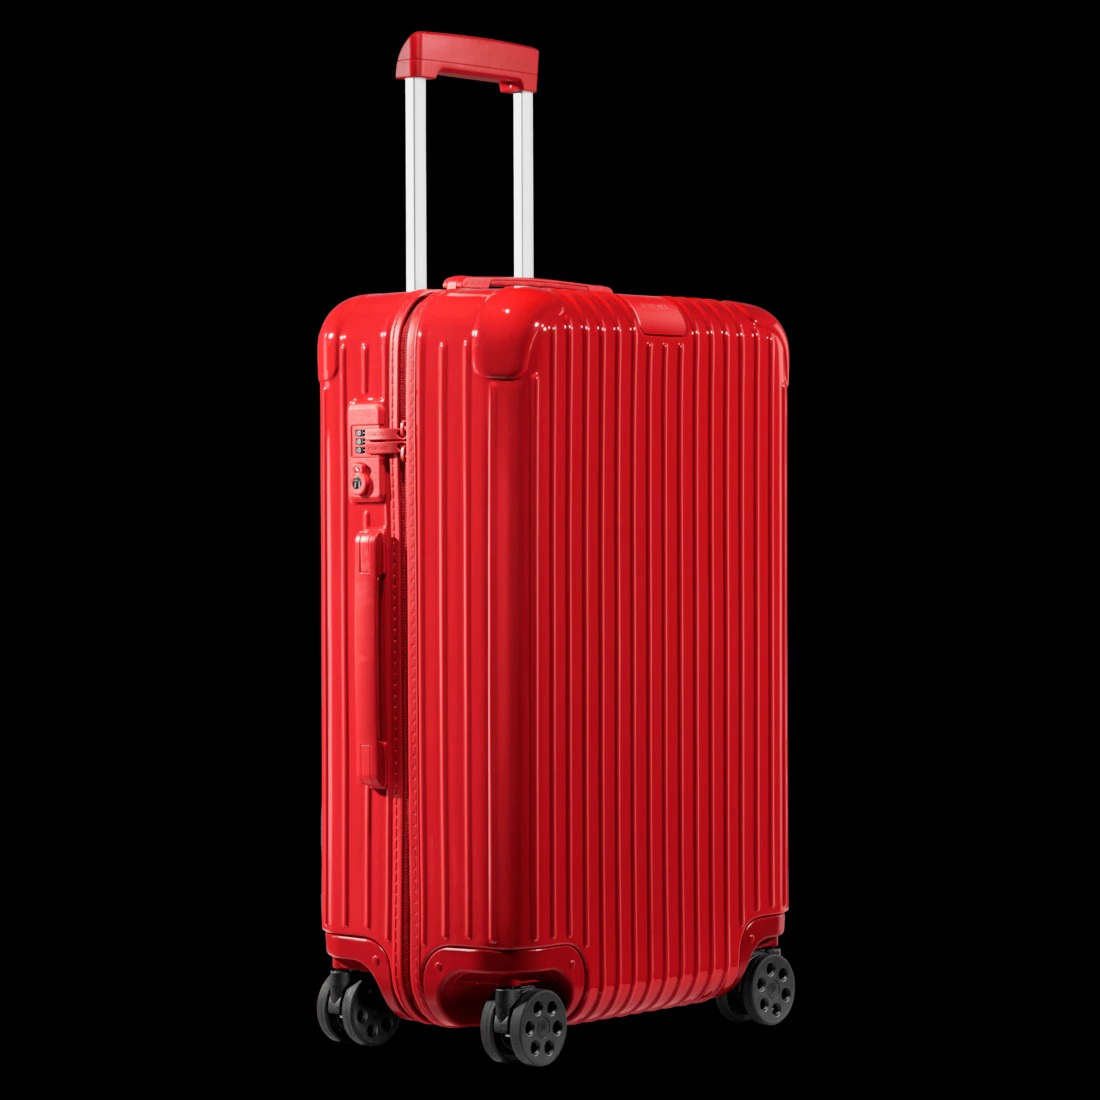 リモワのスーツケースのおすすめ商品比較表